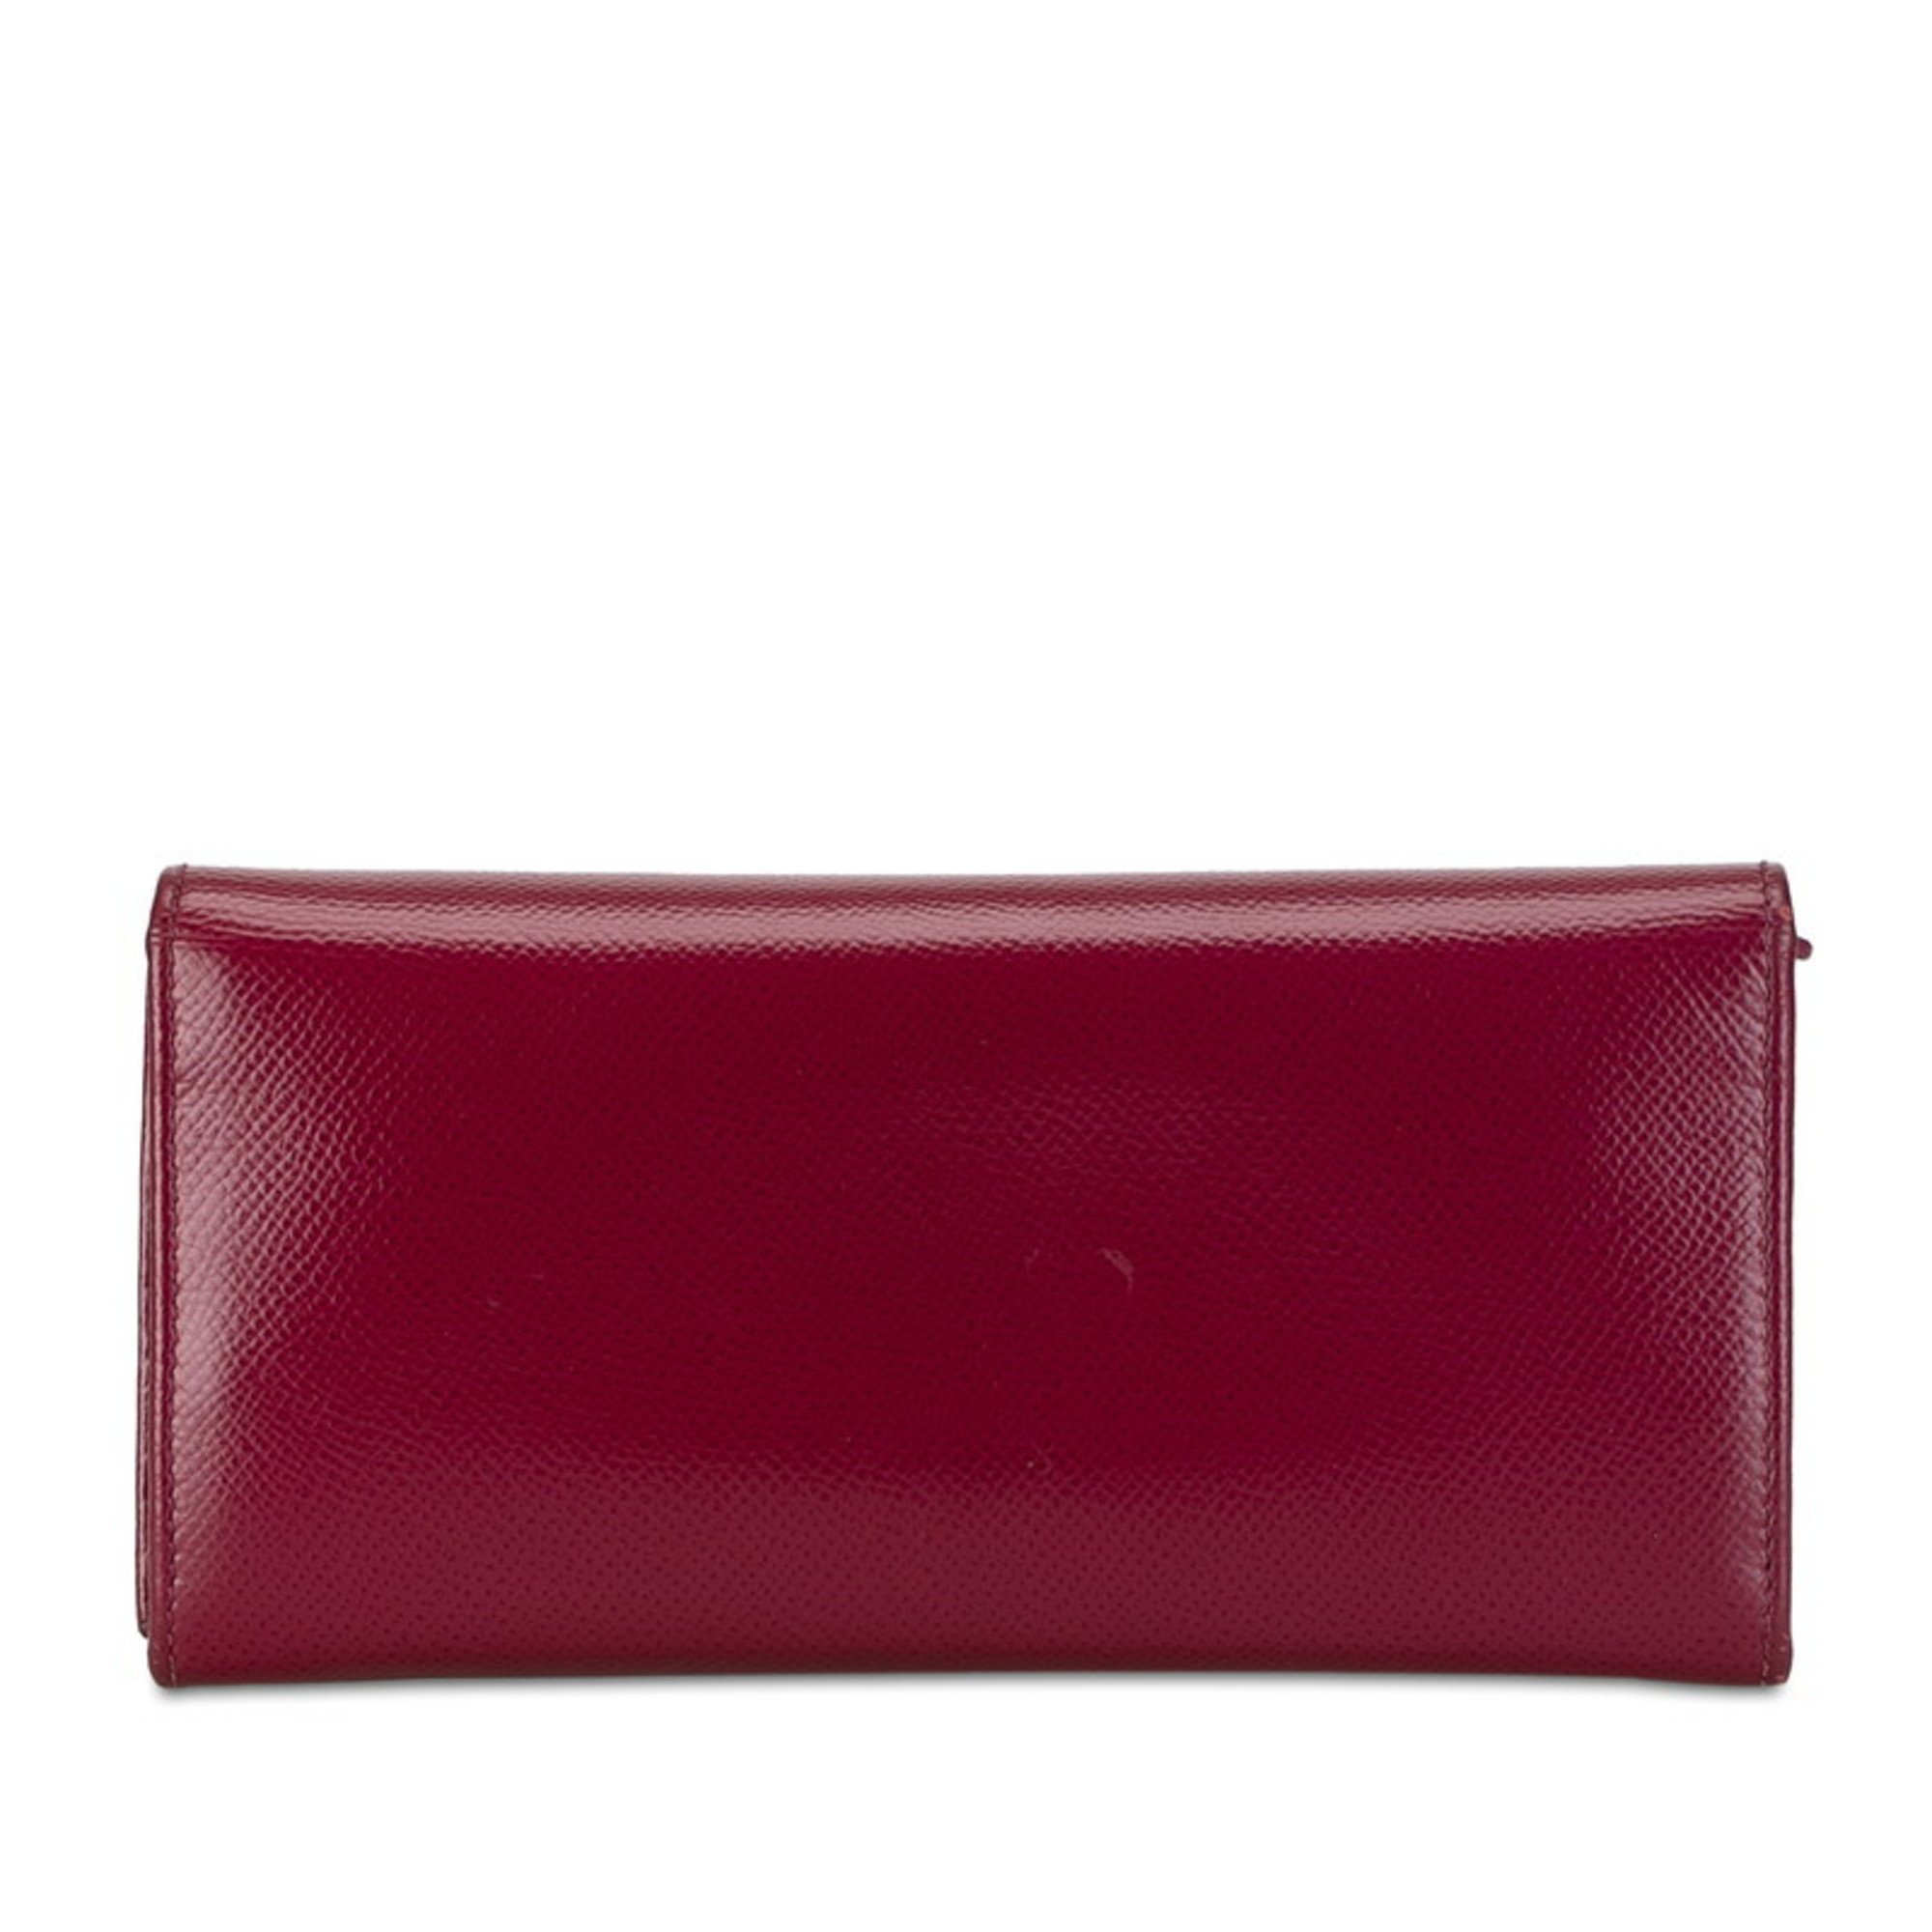 Salvatore Ferragamo Gancini Long Wallet JP-22 D150 Wine Red Leather Women's